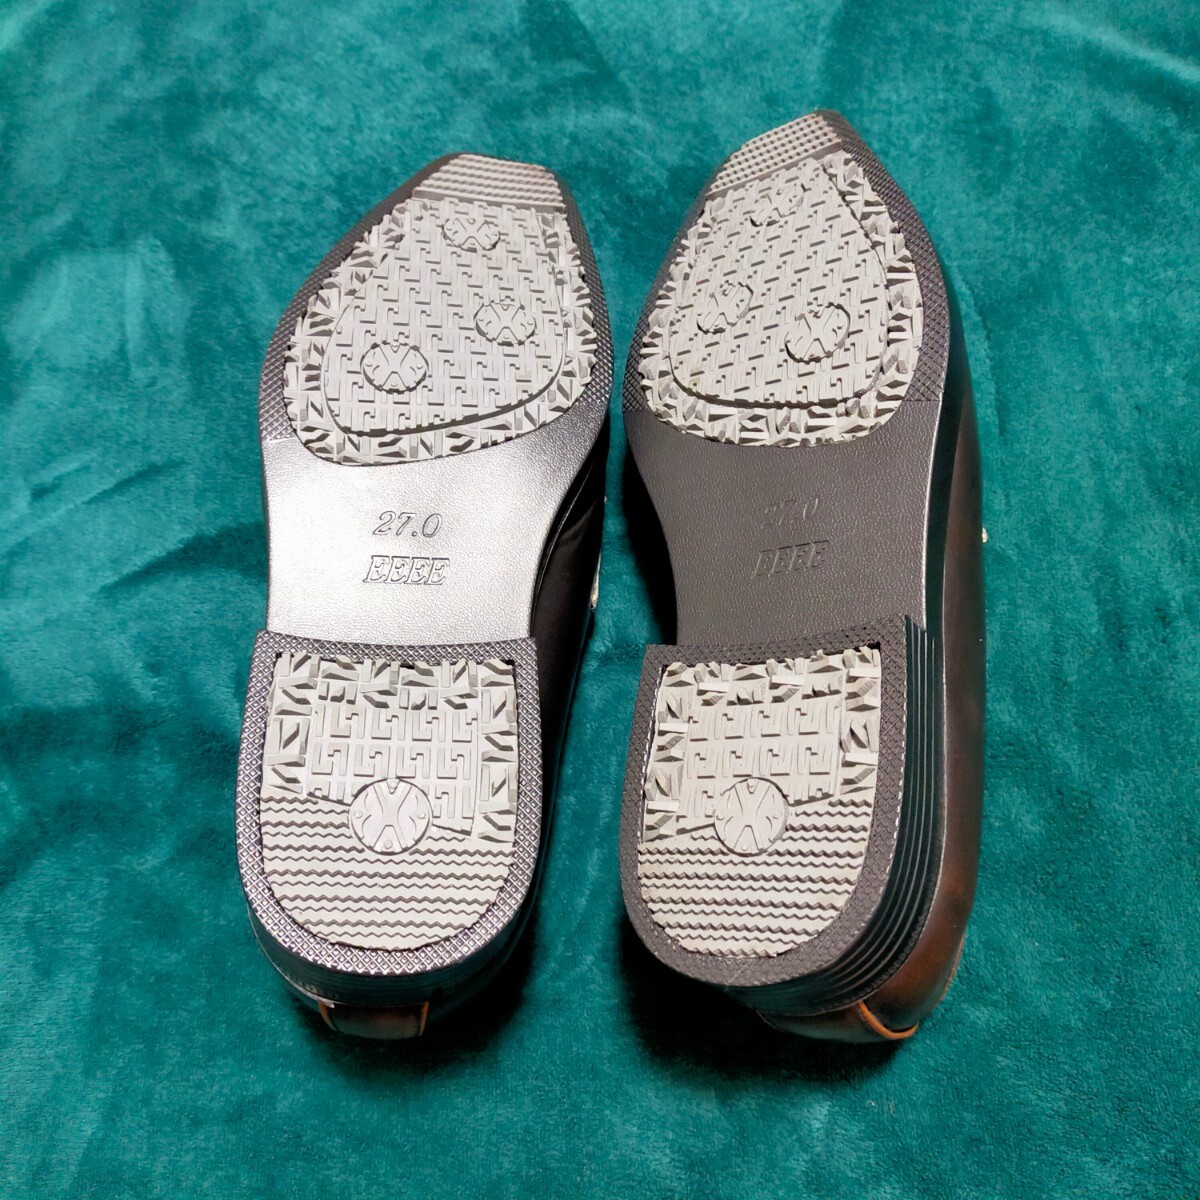 革靴 27'0 27㎝ 新品 未使用品 (サイズ違いの為に購入した靴) メンズシューズ ビジネスシューズ シューズ Men's 靴 の画像9